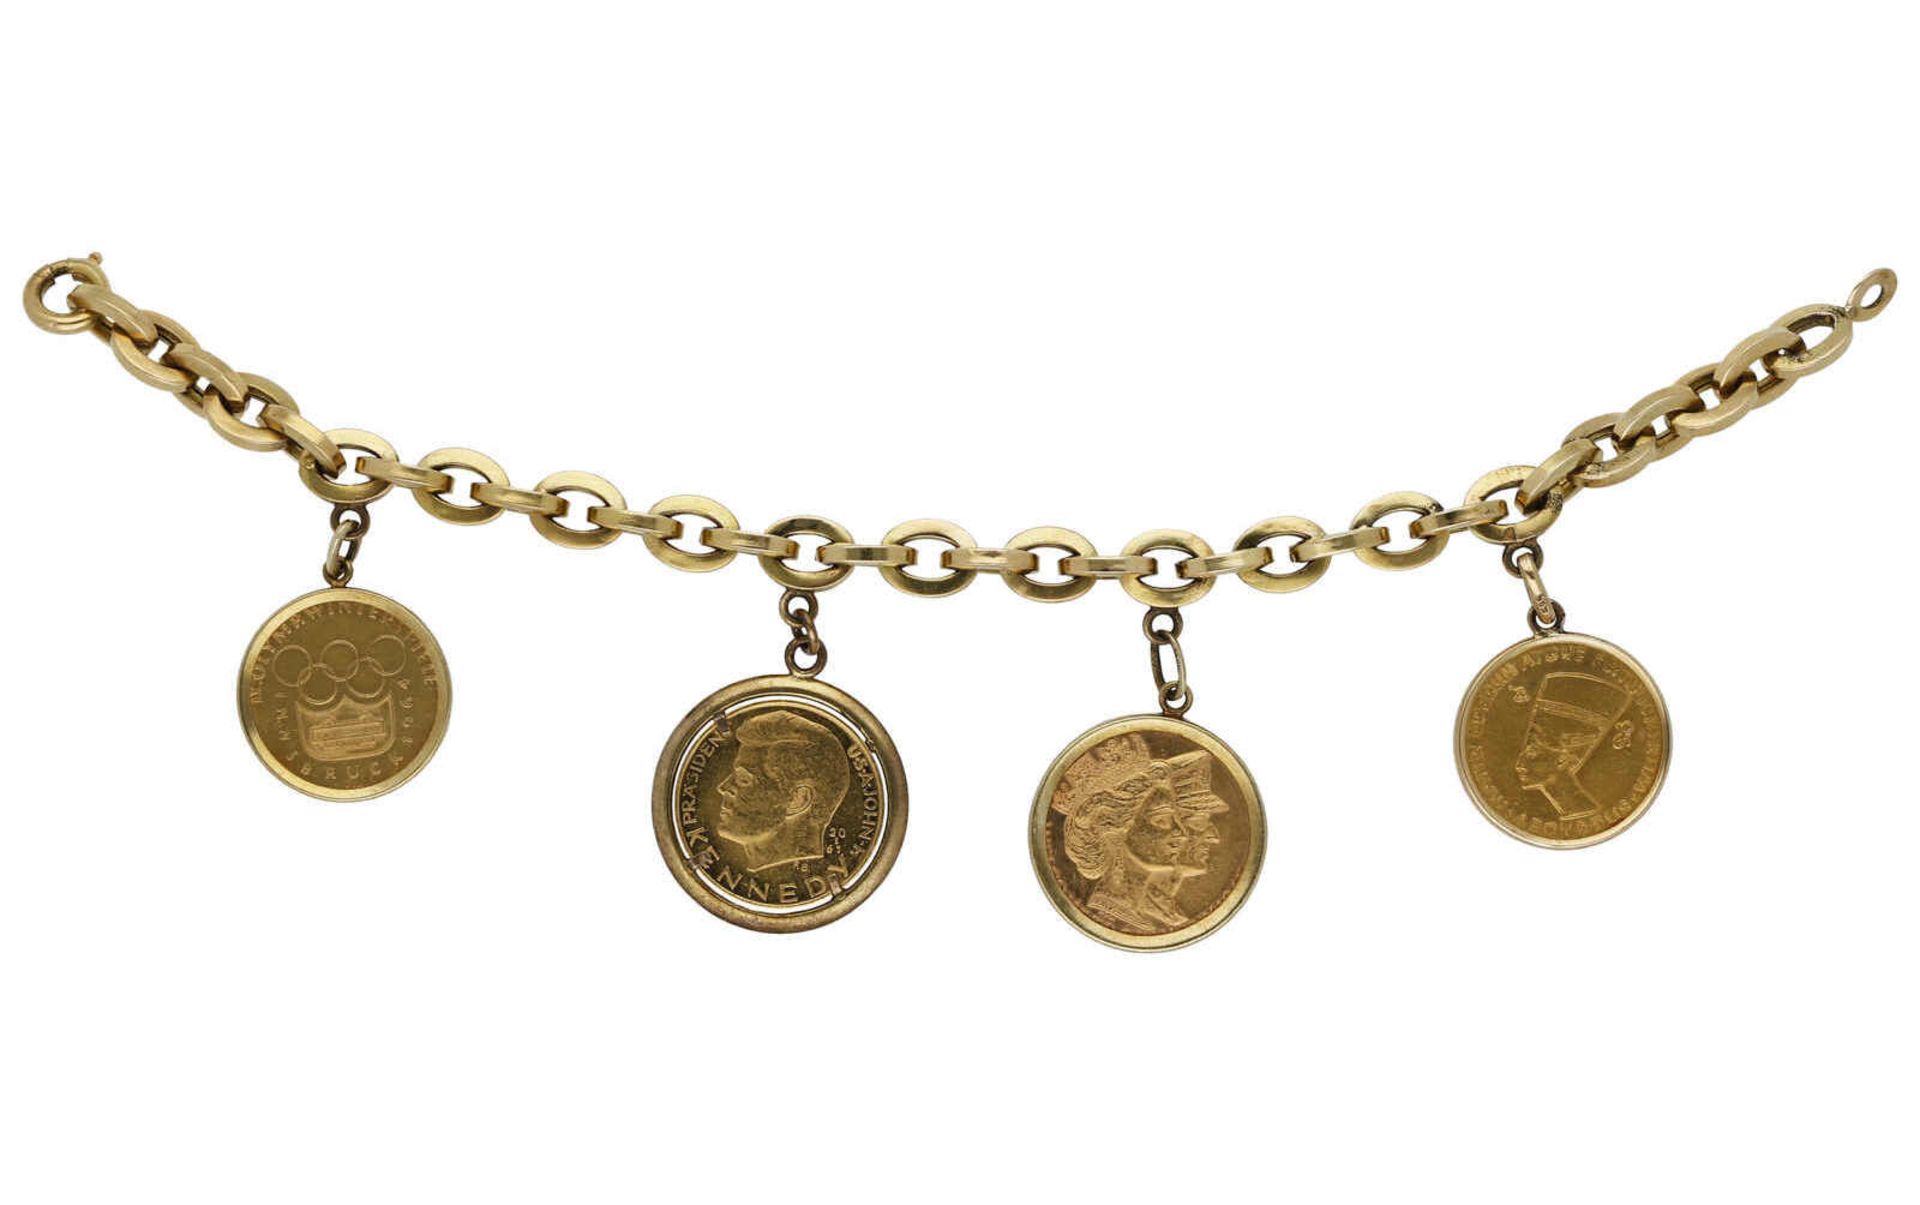 Münz-Armband An Ankerkette Gelbgold 18K, signiert Bucherer 4 Goldmünzen in Gelbgold 14K Fassungen. - Bild 2 aus 3